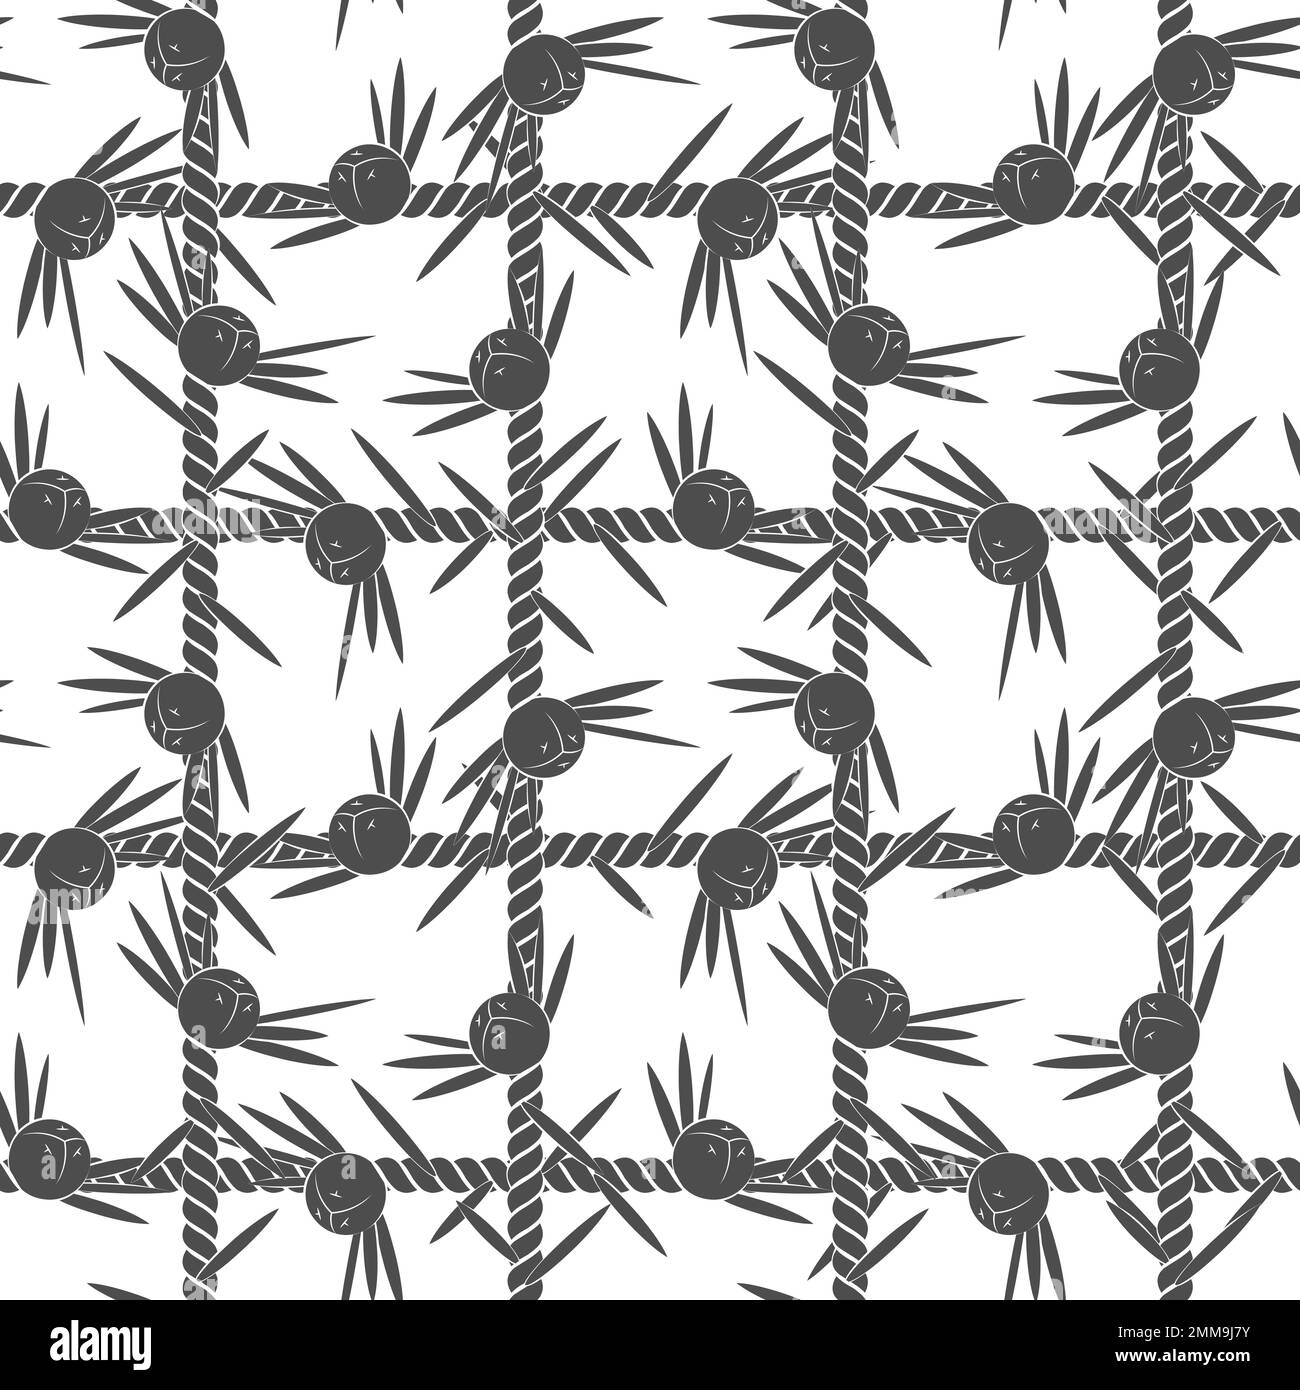 Nahtloses Muster, Netz der Schnur mit Wacholder. Schwarzer und weißer Vektorhintergrund auf weiß. Stock Vektor